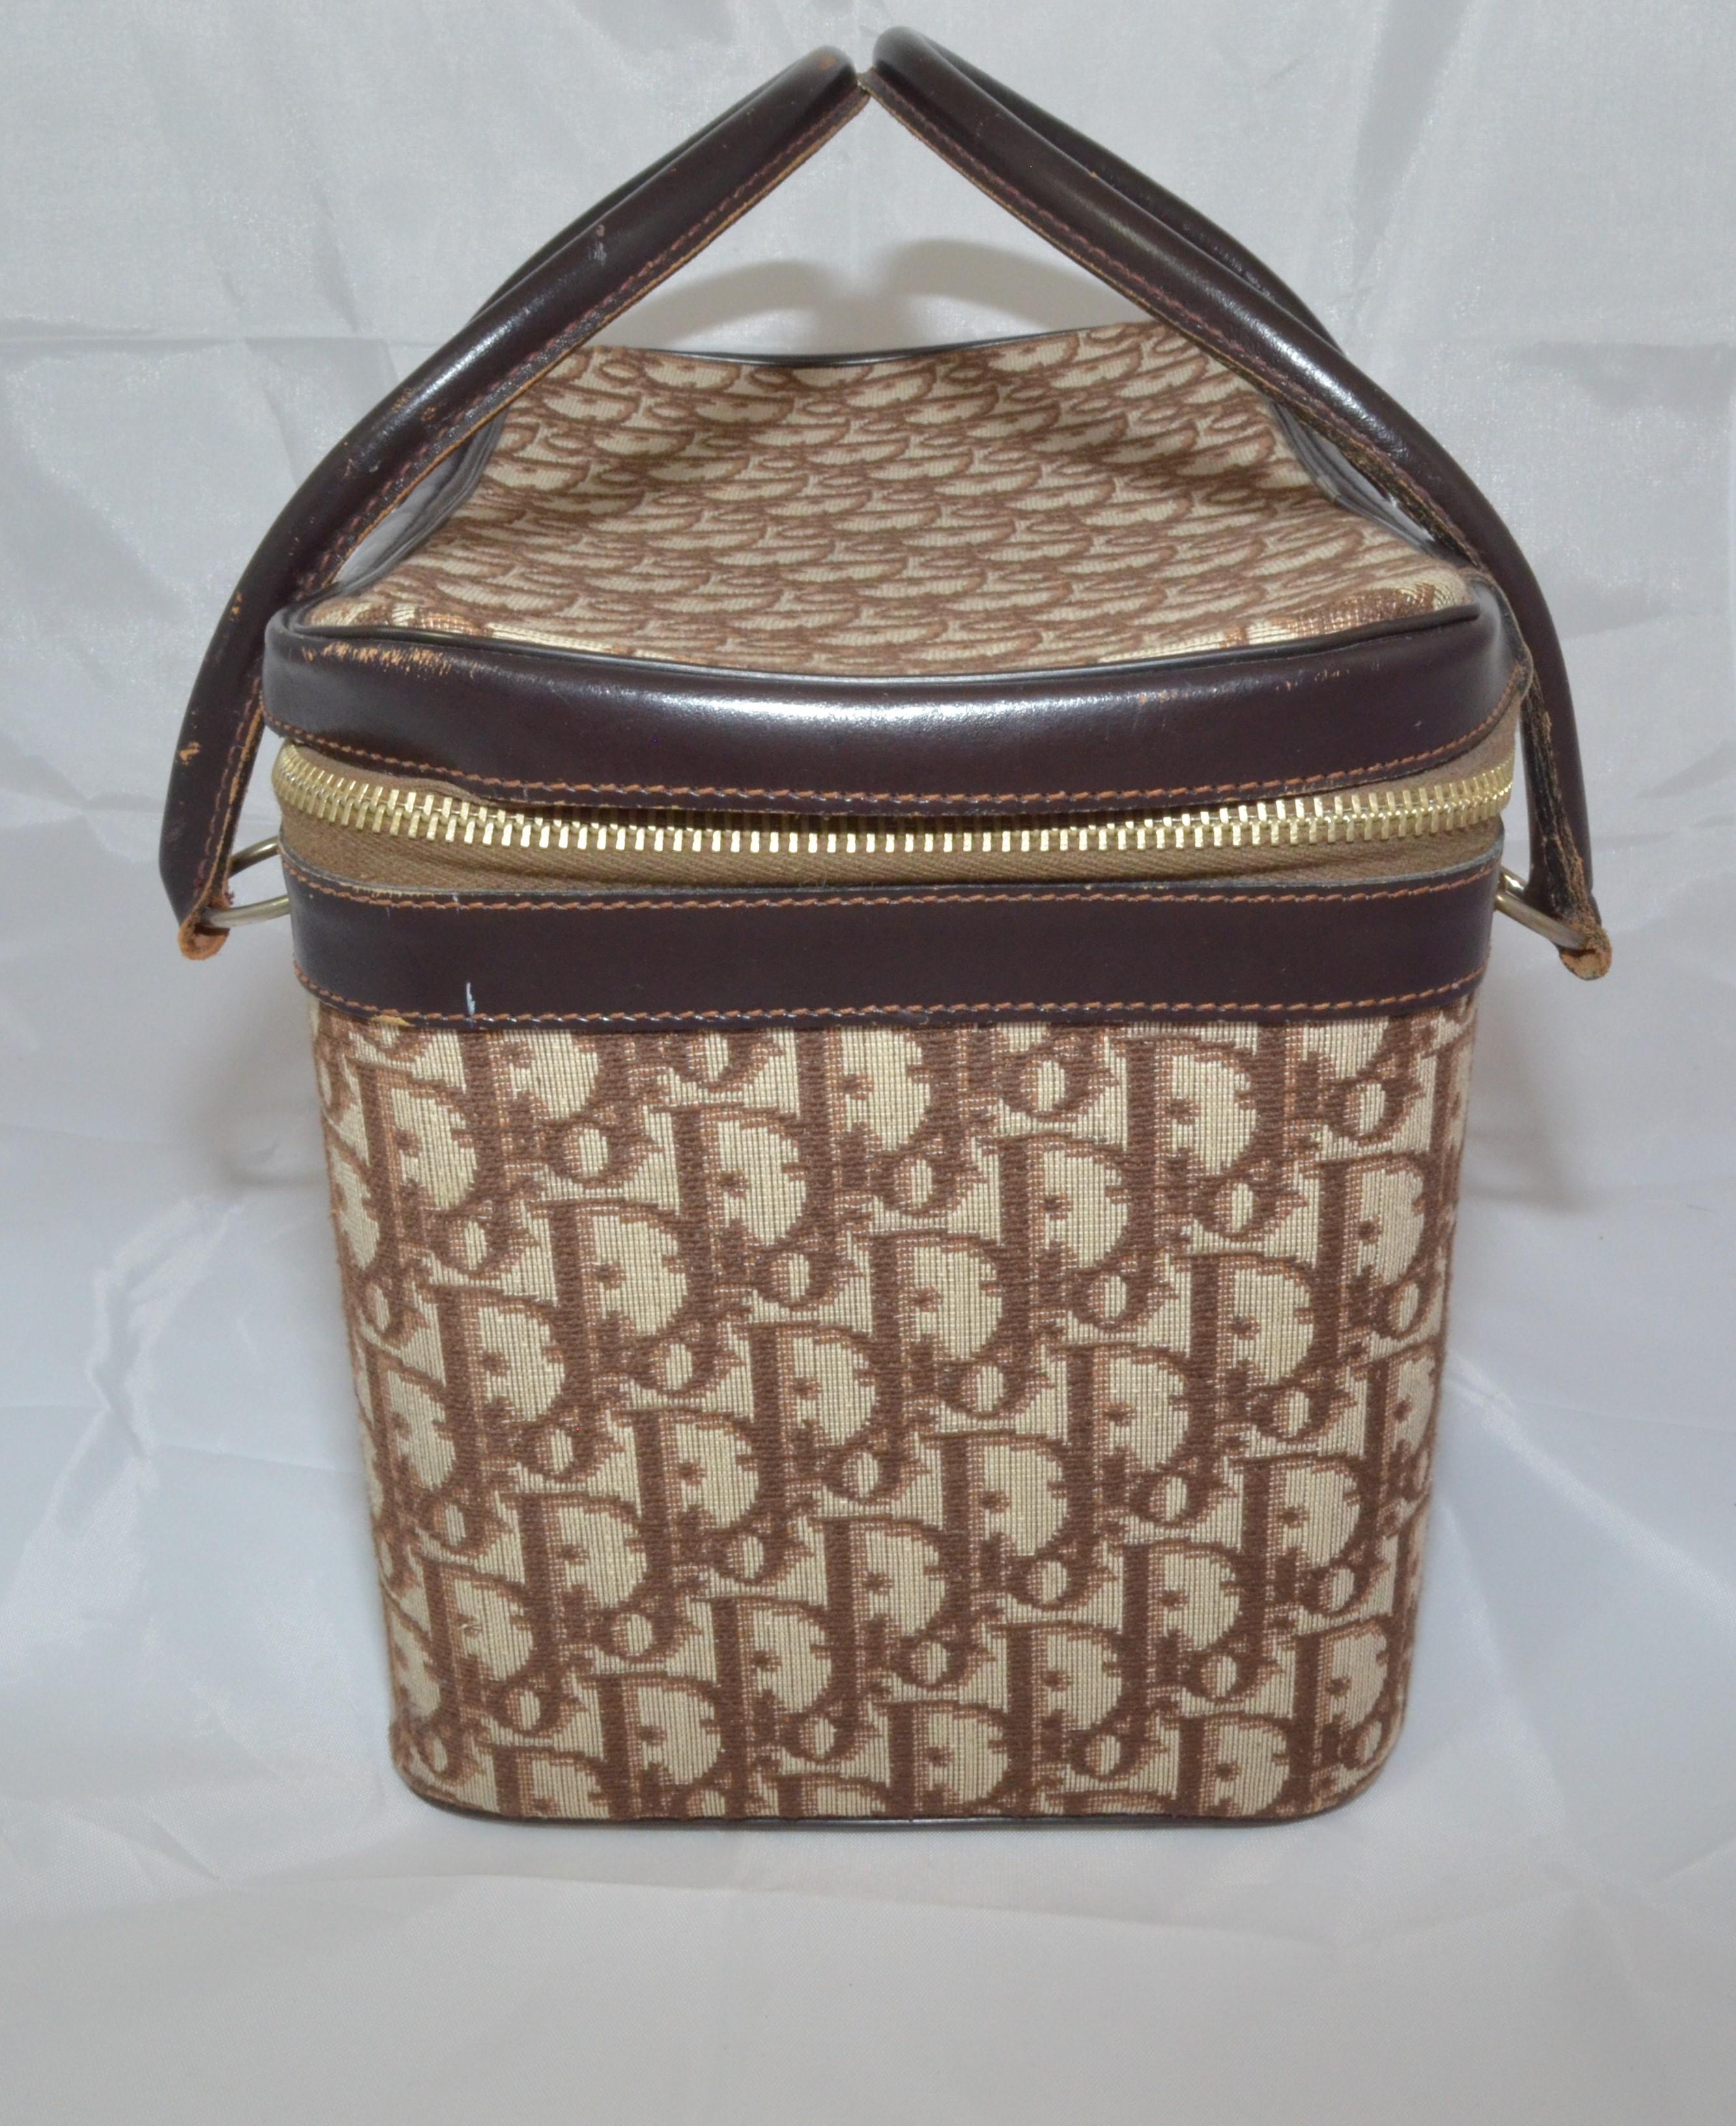 Dior 1970's Travel Case 

-valise de voyage en toile et cuir marron des années 1970

-garniture en cuir sur les bords et doubles poignées roulées

-fermeture à glissière

-entièrement doublé de nylon avec une pochette zippée détachable sur un